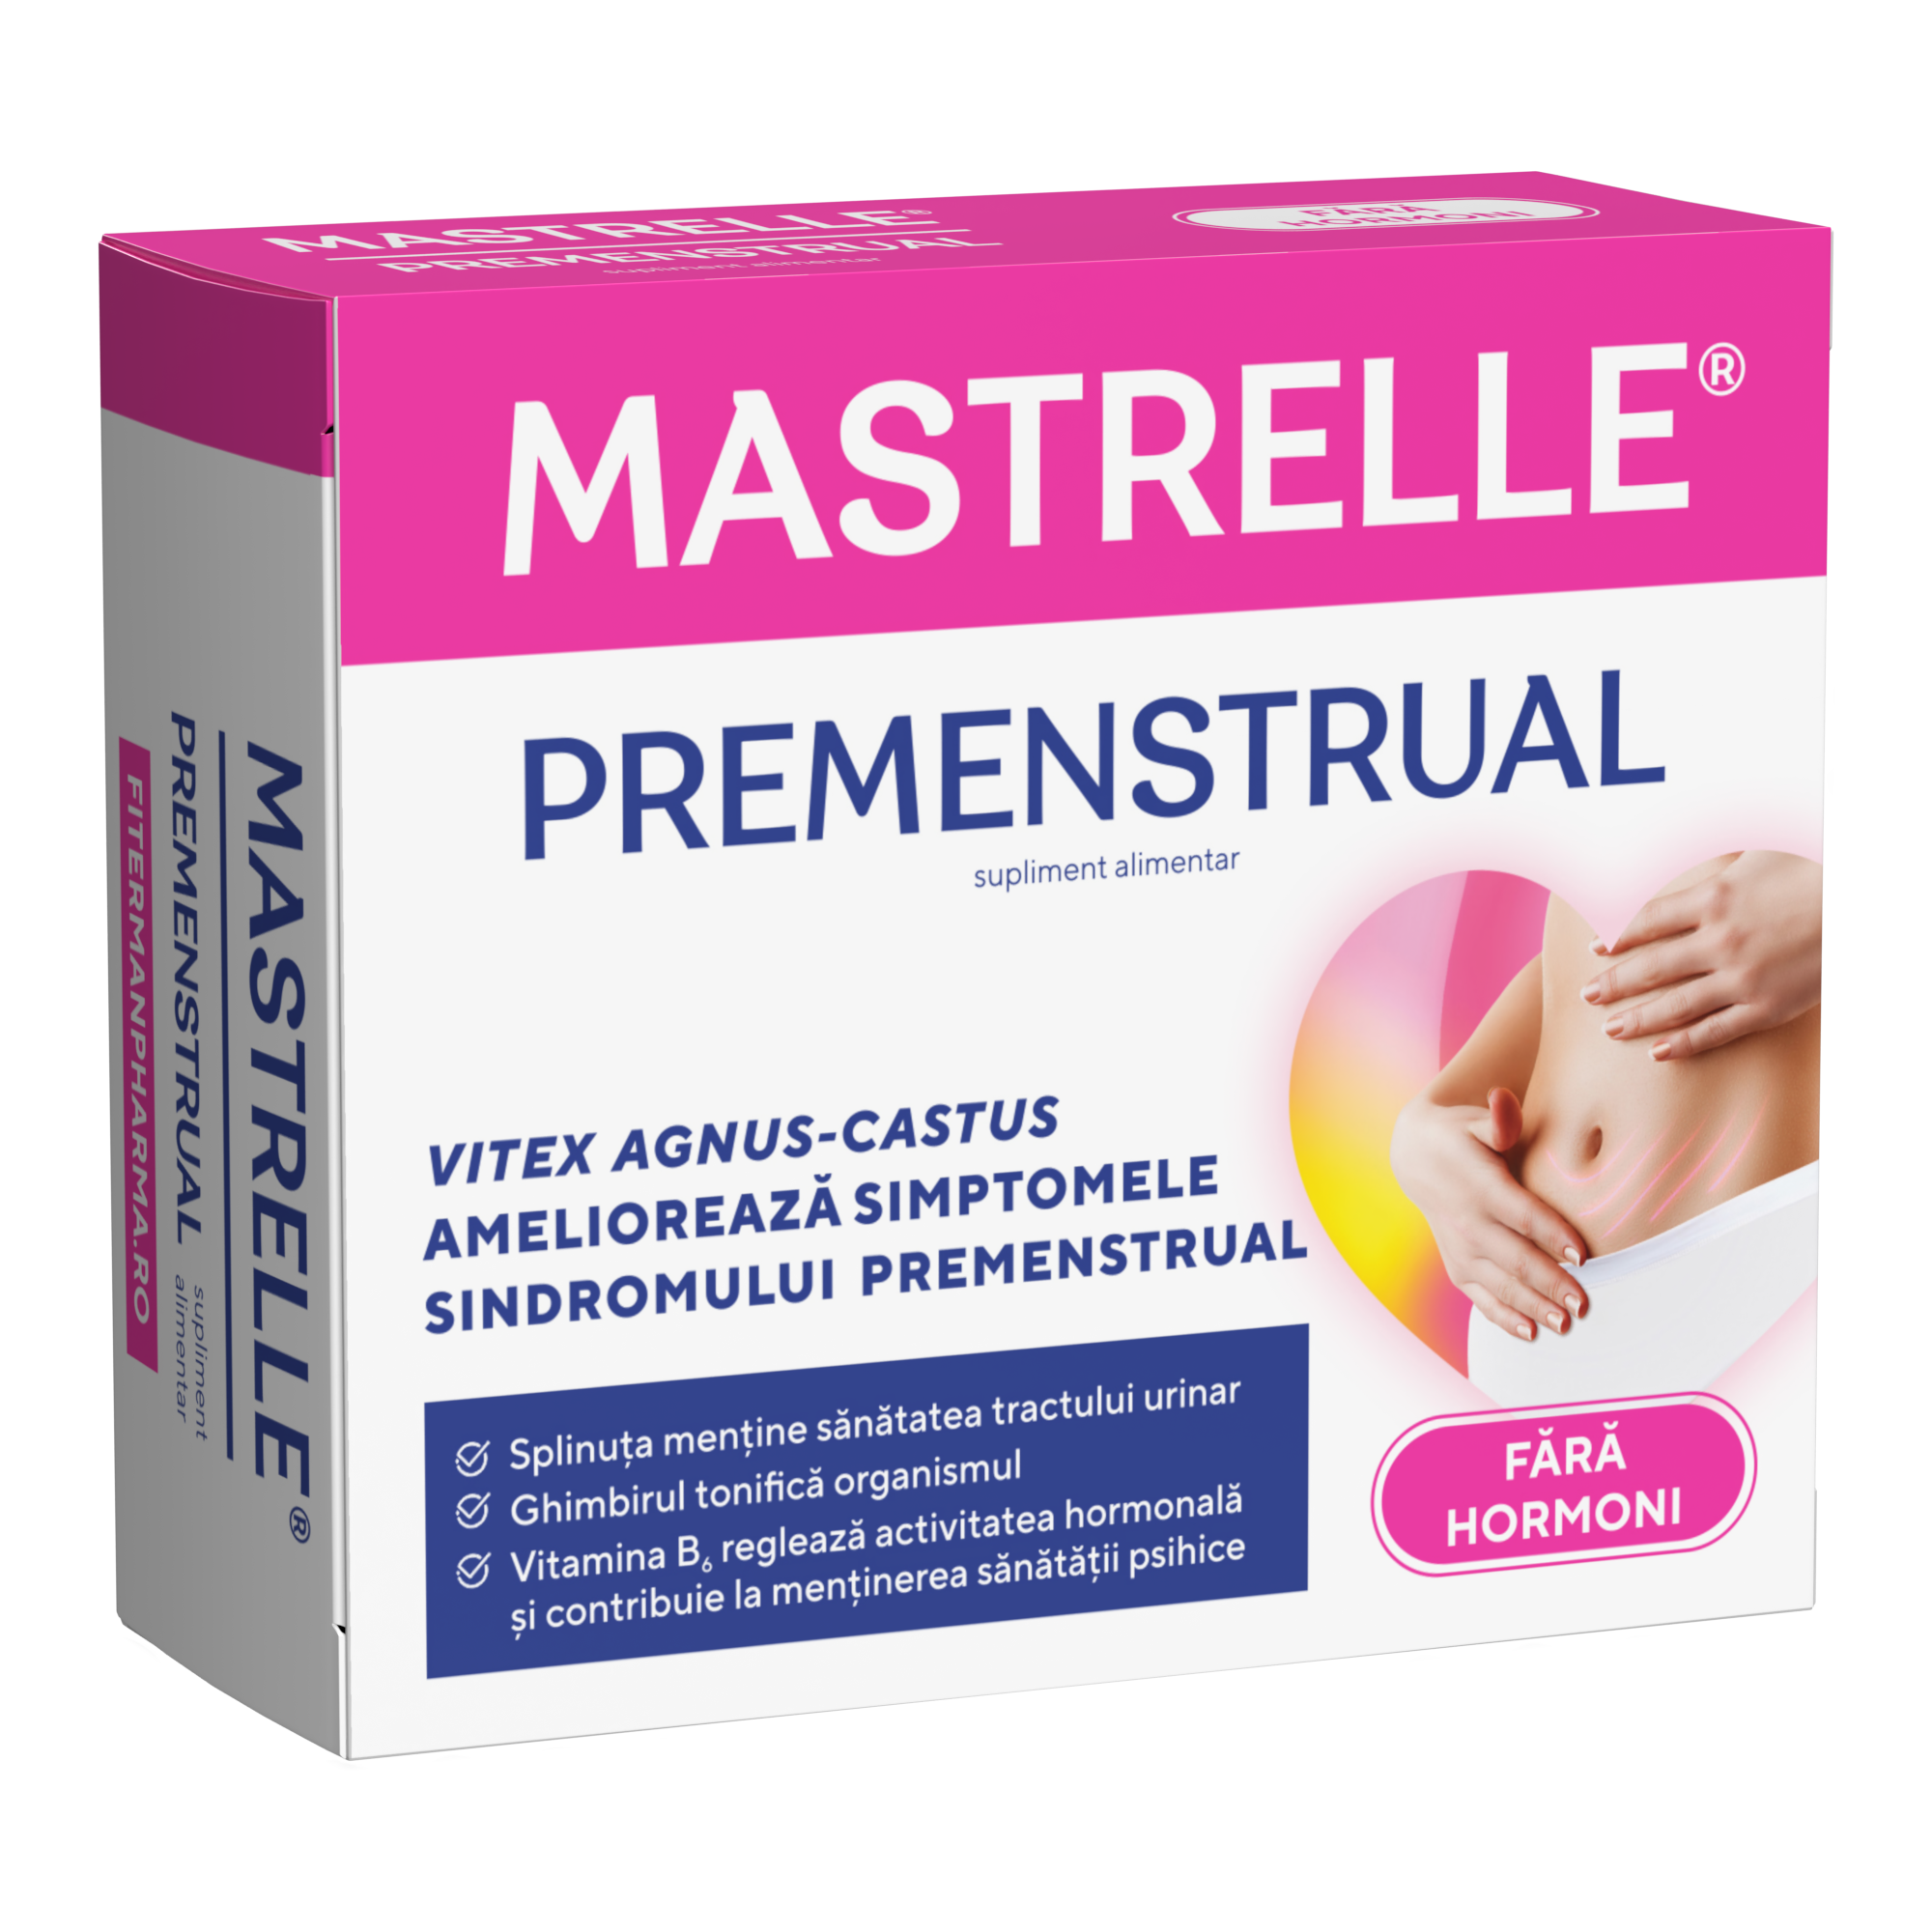 Sistemul genito-urinar - Mastrelle Premenstrual, 30 comprimate filmate, Fiterman, nordpharm.ro